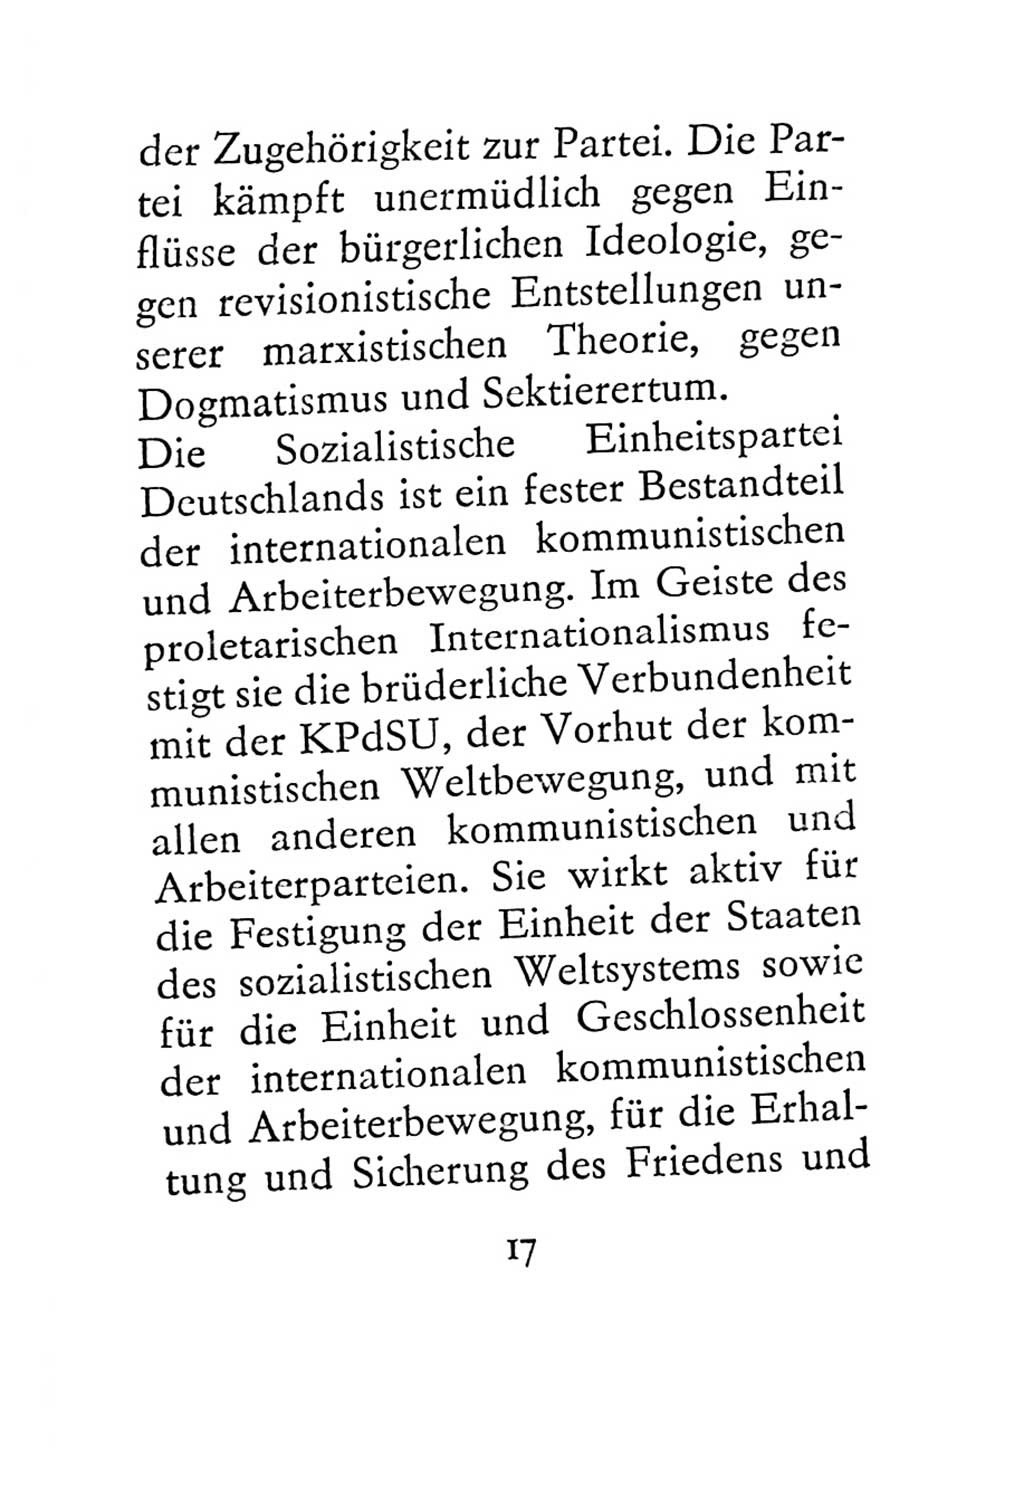 Statut der Sozialistischen Einheitspartei Deutschlands (SED) 1967, Seite 17 (St. SED DDR 1967, S. 17)